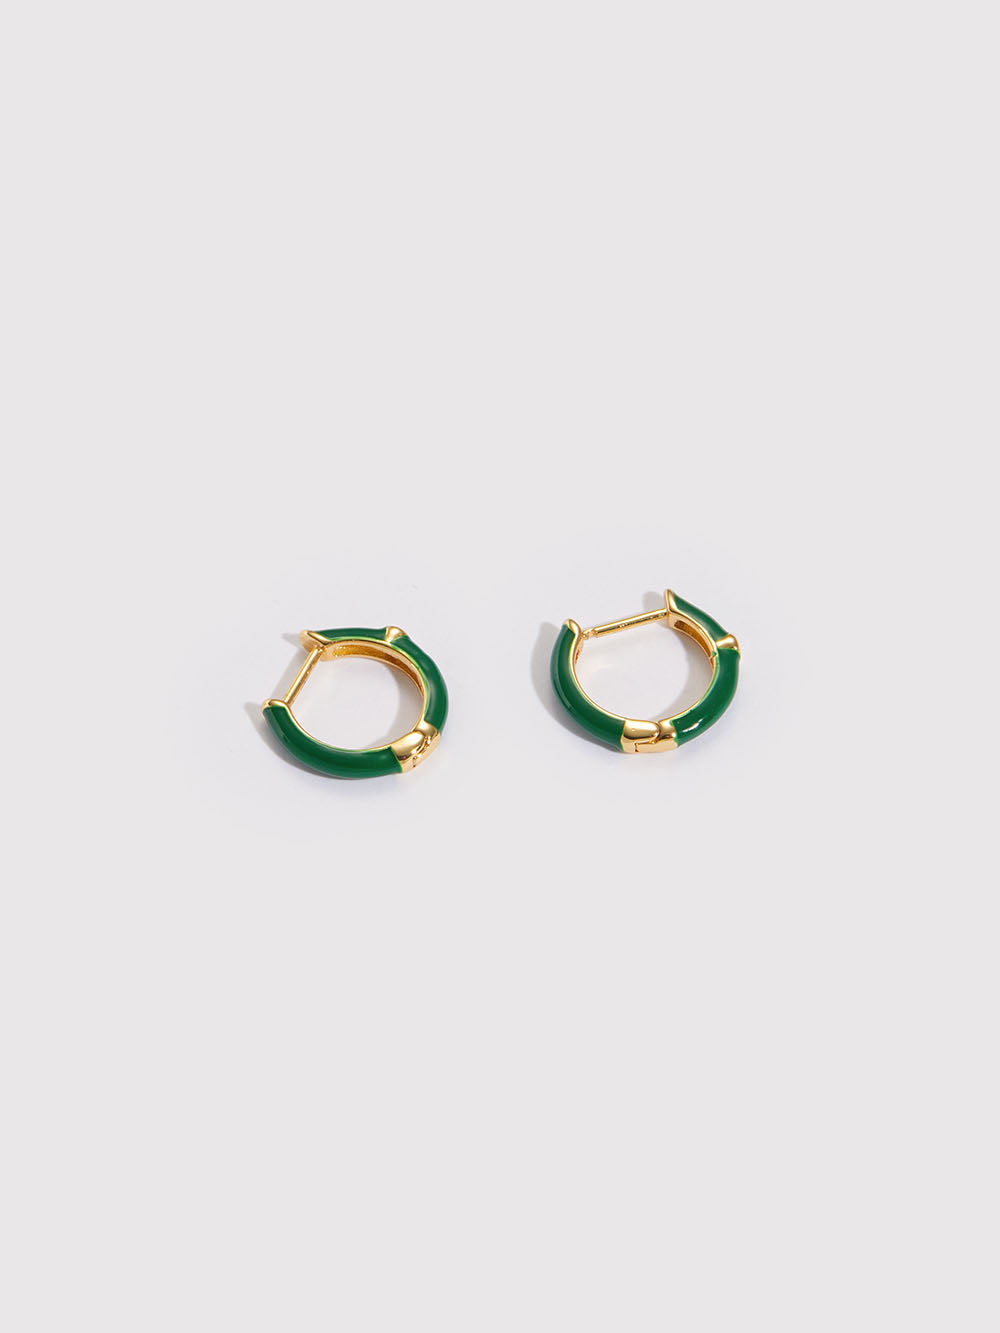 Lunette Green Enamel Huggie Hoop Earrings with Zirconia Gemstones